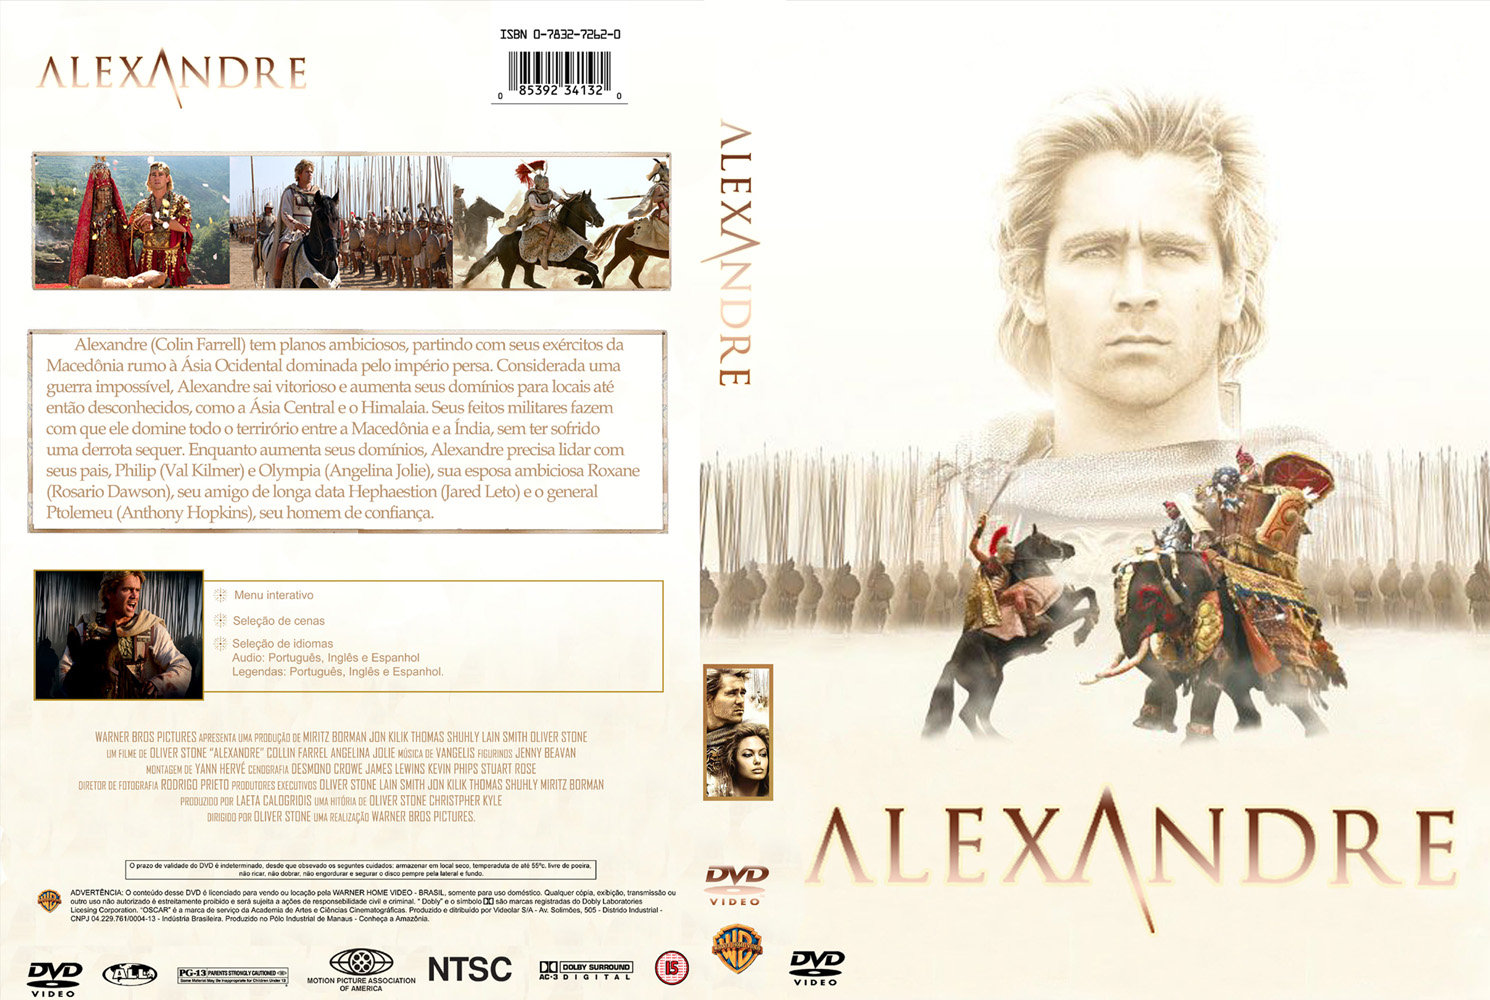 http://3.bp.blogspot.com/-FHrrqTWfNkU/T7xvKtpiV2I/AAAAAAAAAQg/NDV7cem3_z8/s1600/alexander-movie-dvd-front-cover1.jpg